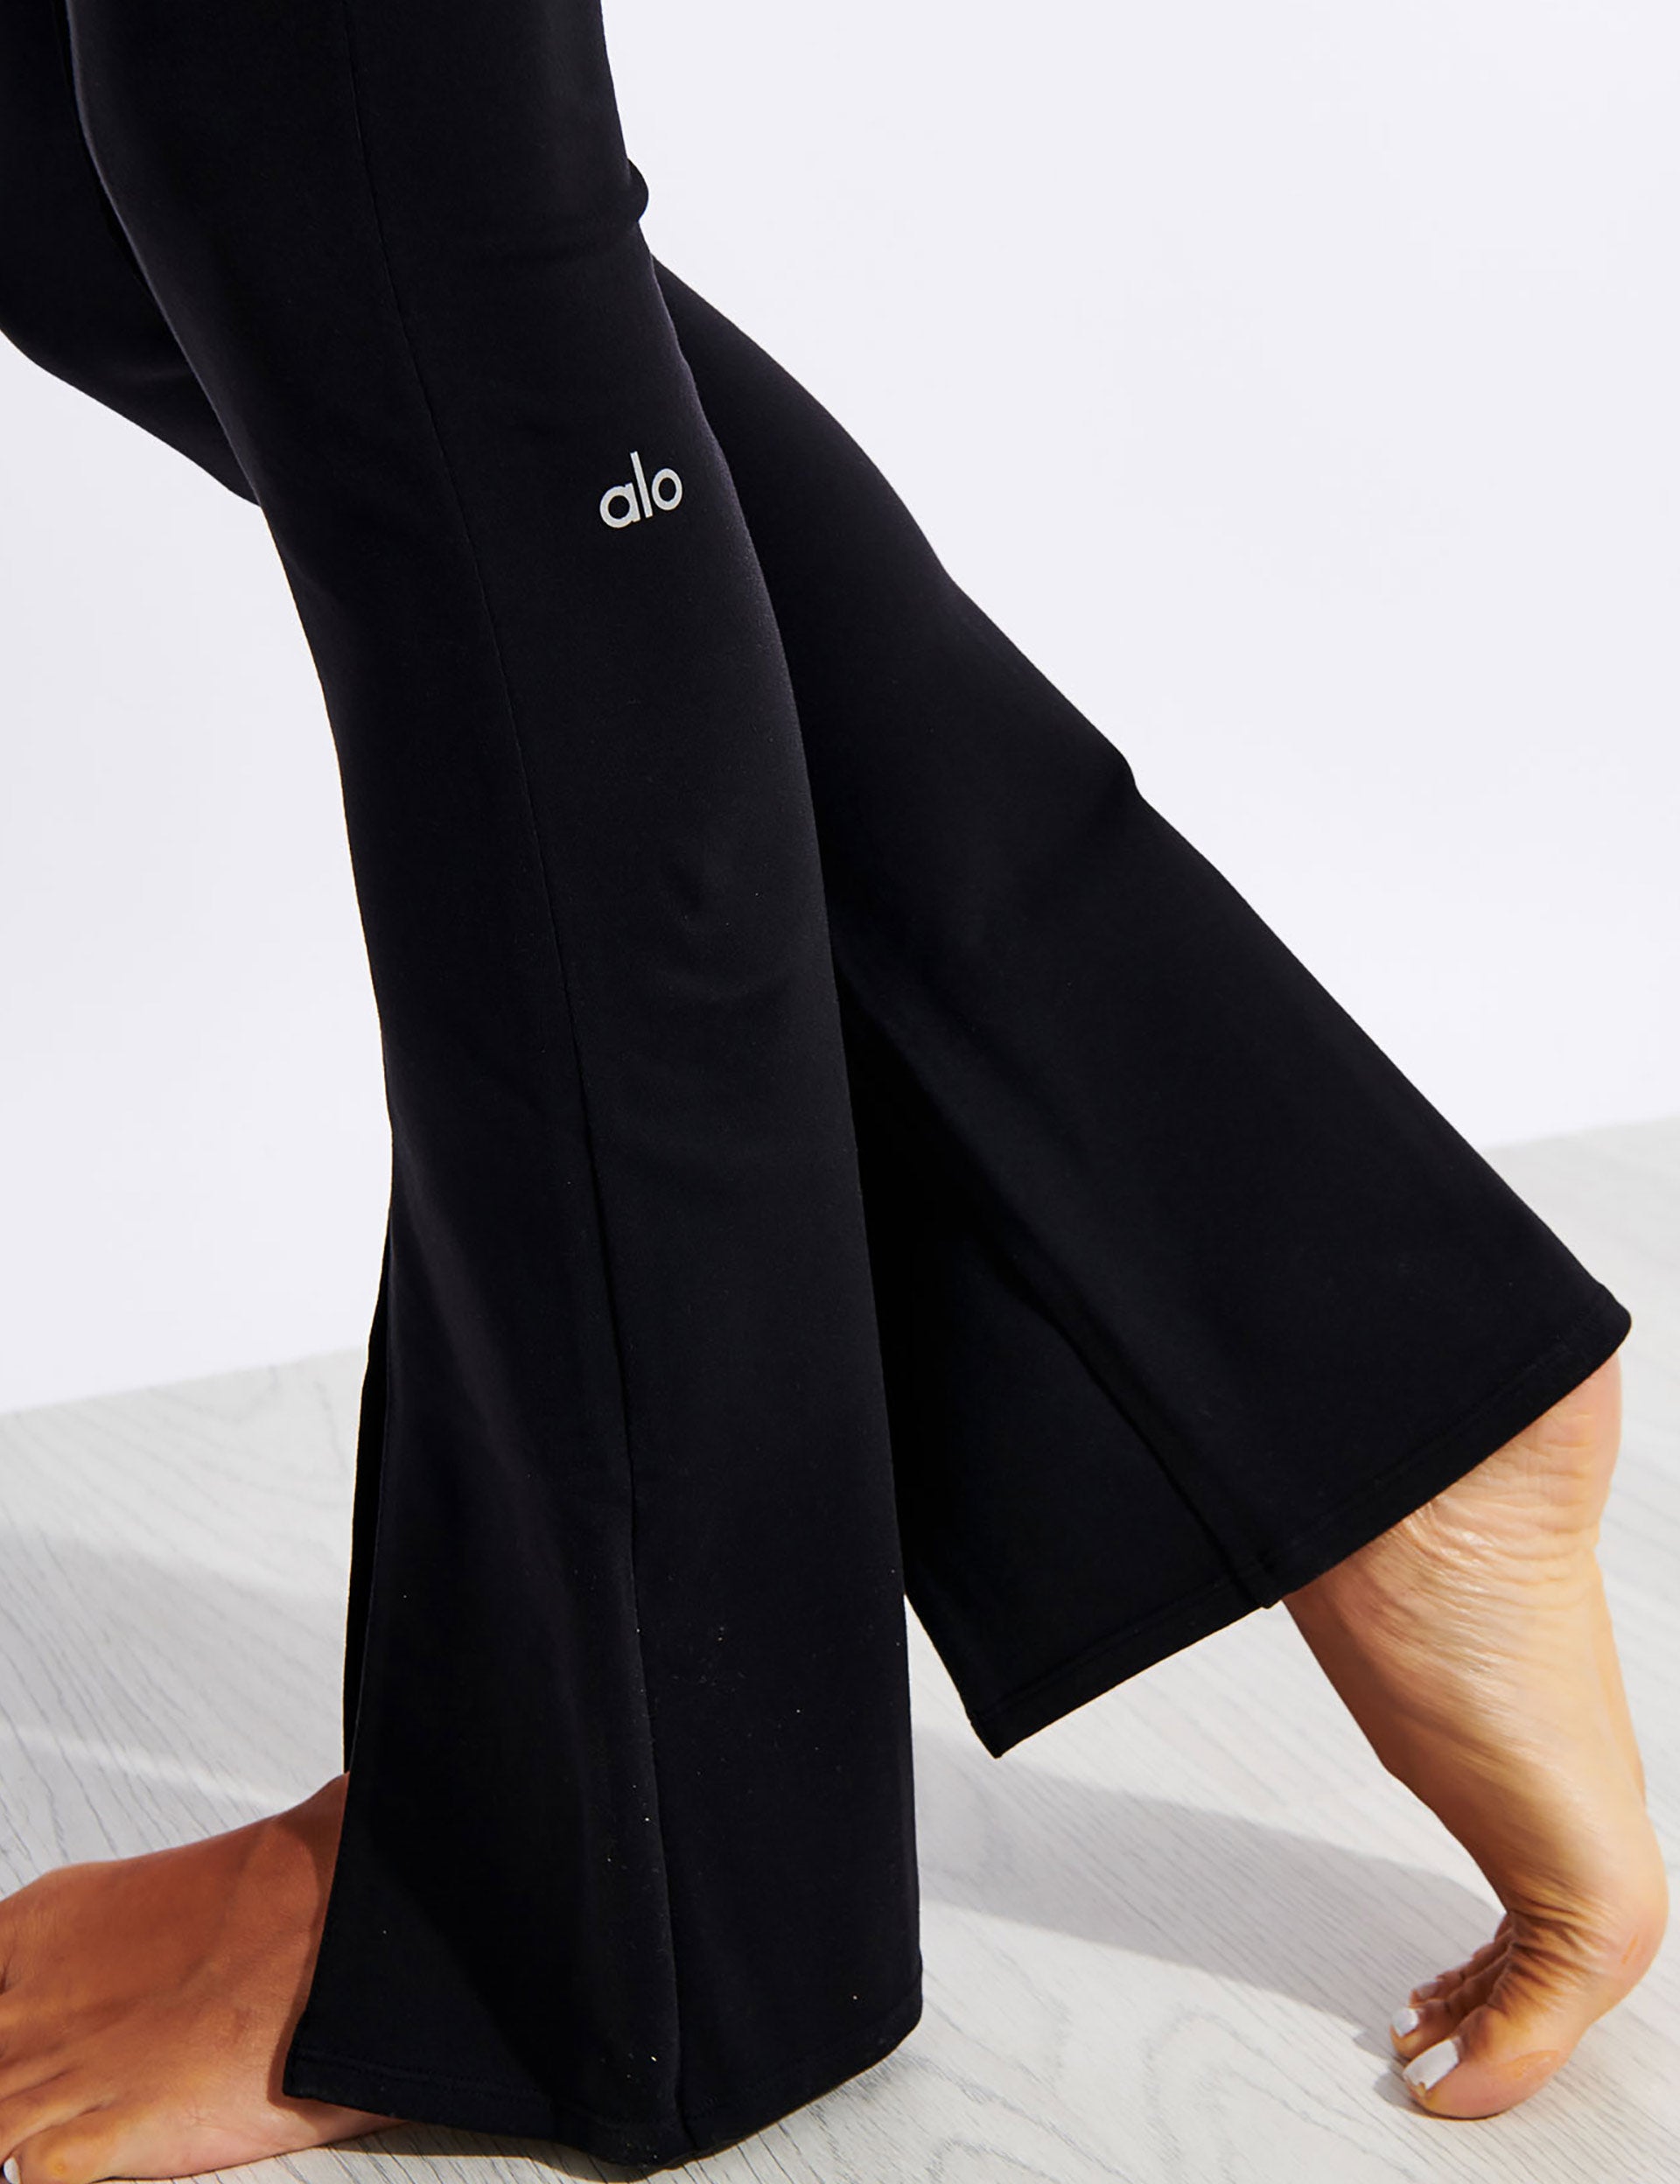 Alo Yoga SMALL Airbrush High-Waist Flutter Legging - Black